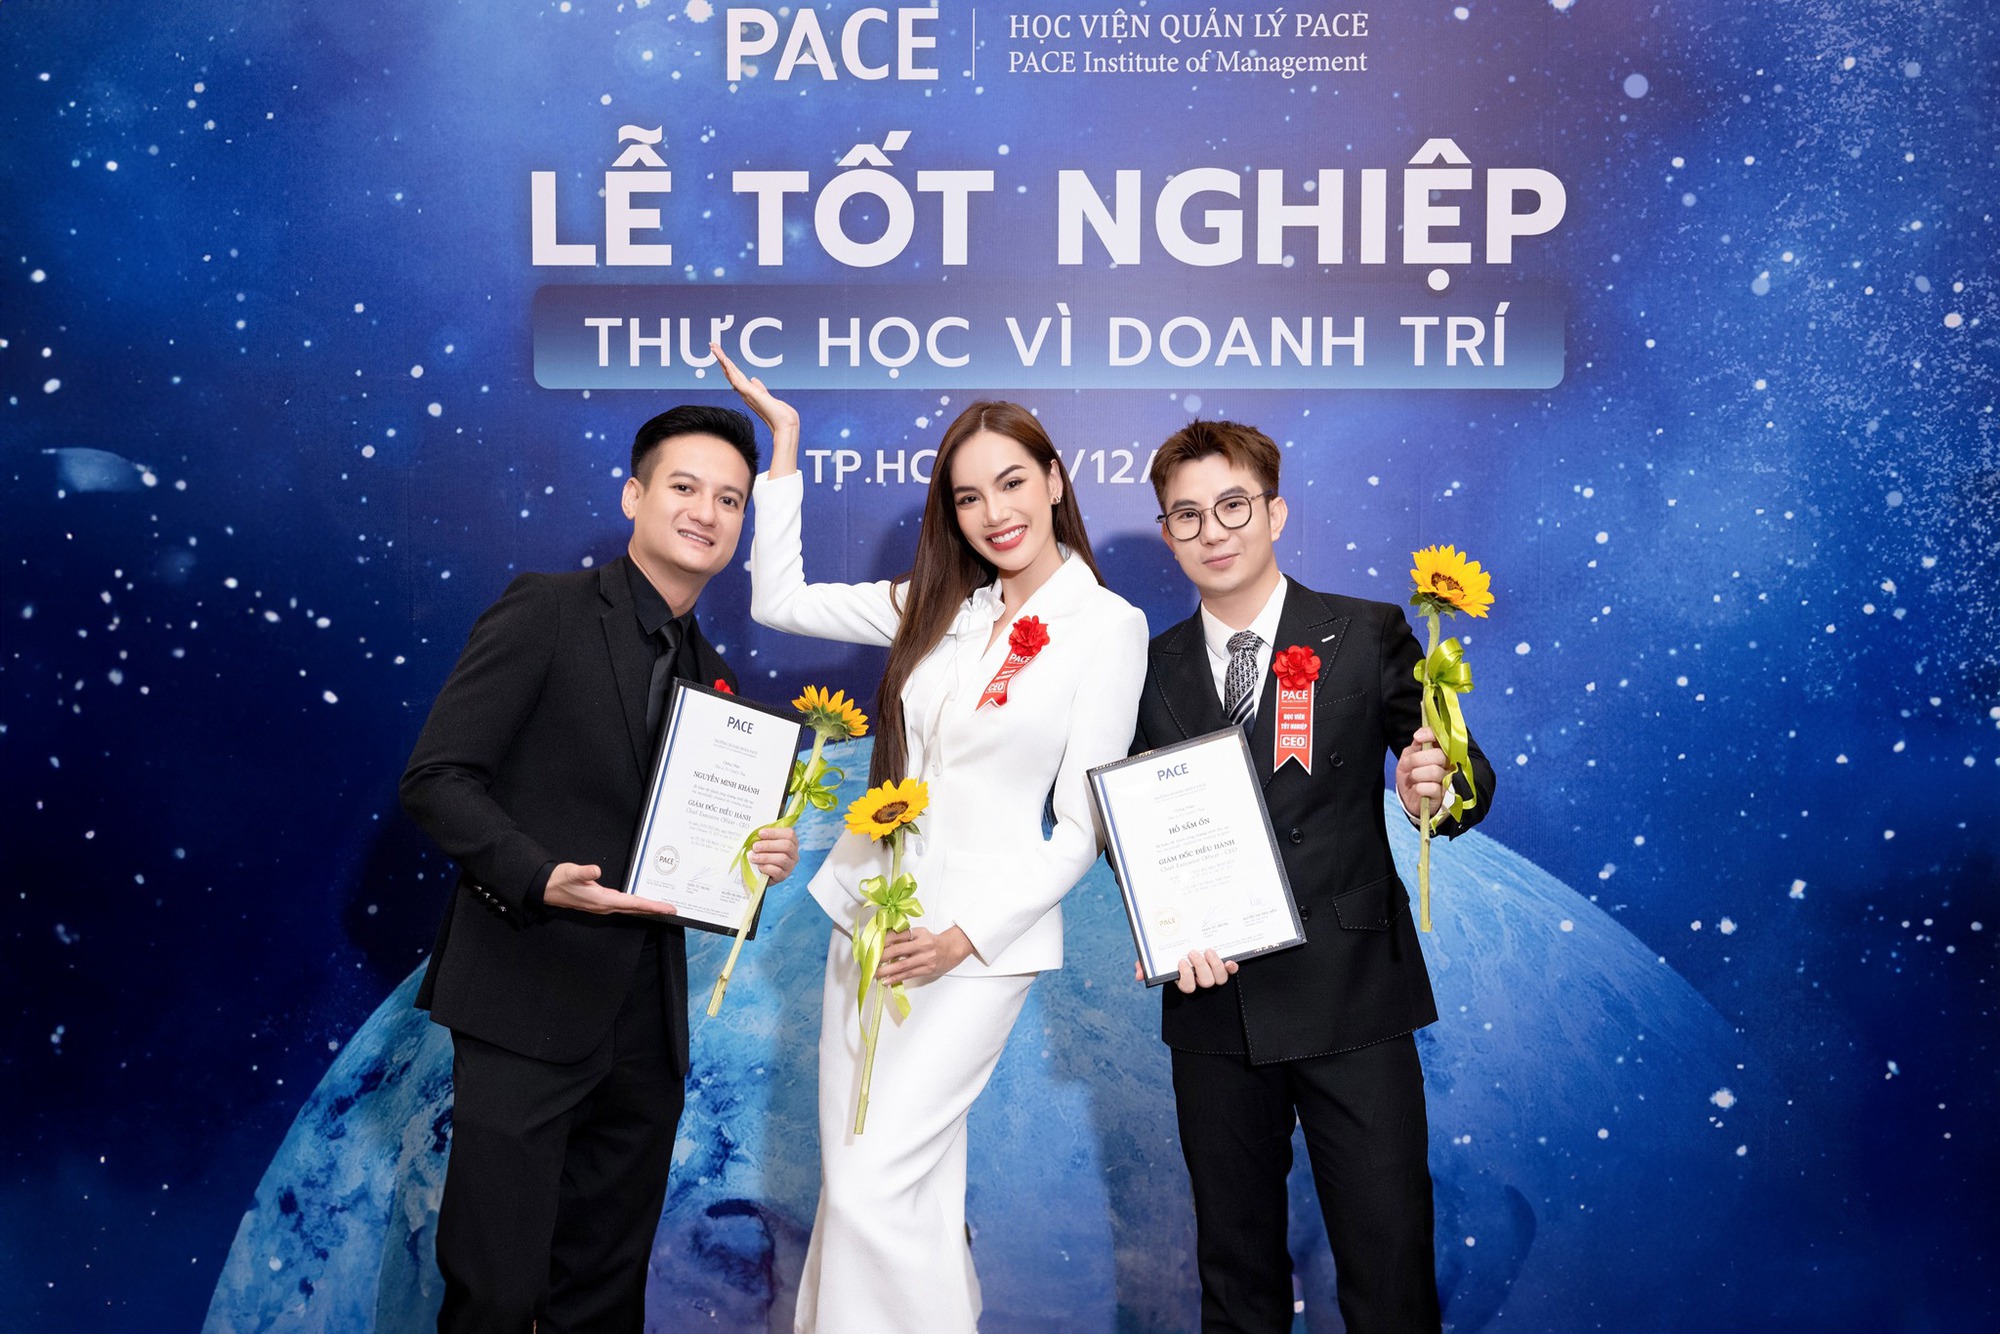 Ngọc Hằng đội vương miện á hậu 2 quốc tế trở về, Lê Hoàng Phương nhận bằng tốt nghiệp  - Ảnh 9.